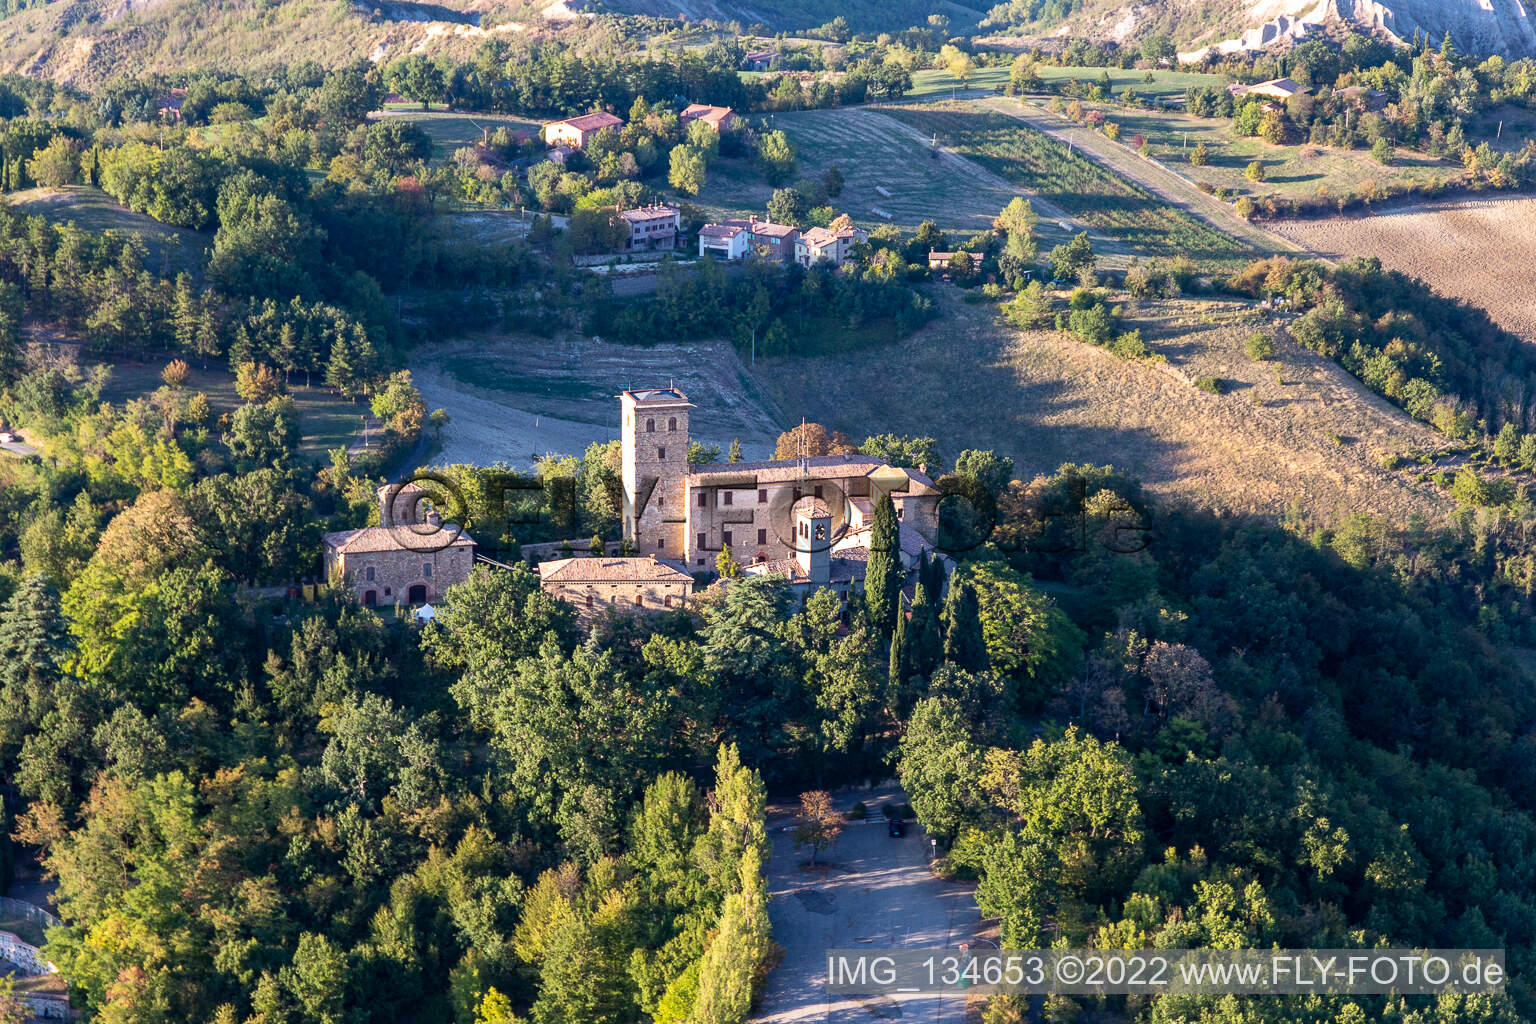 Château de Montegibbio Château de Montegibbio à Sassuolo dans le département Modena, Italie d'en haut